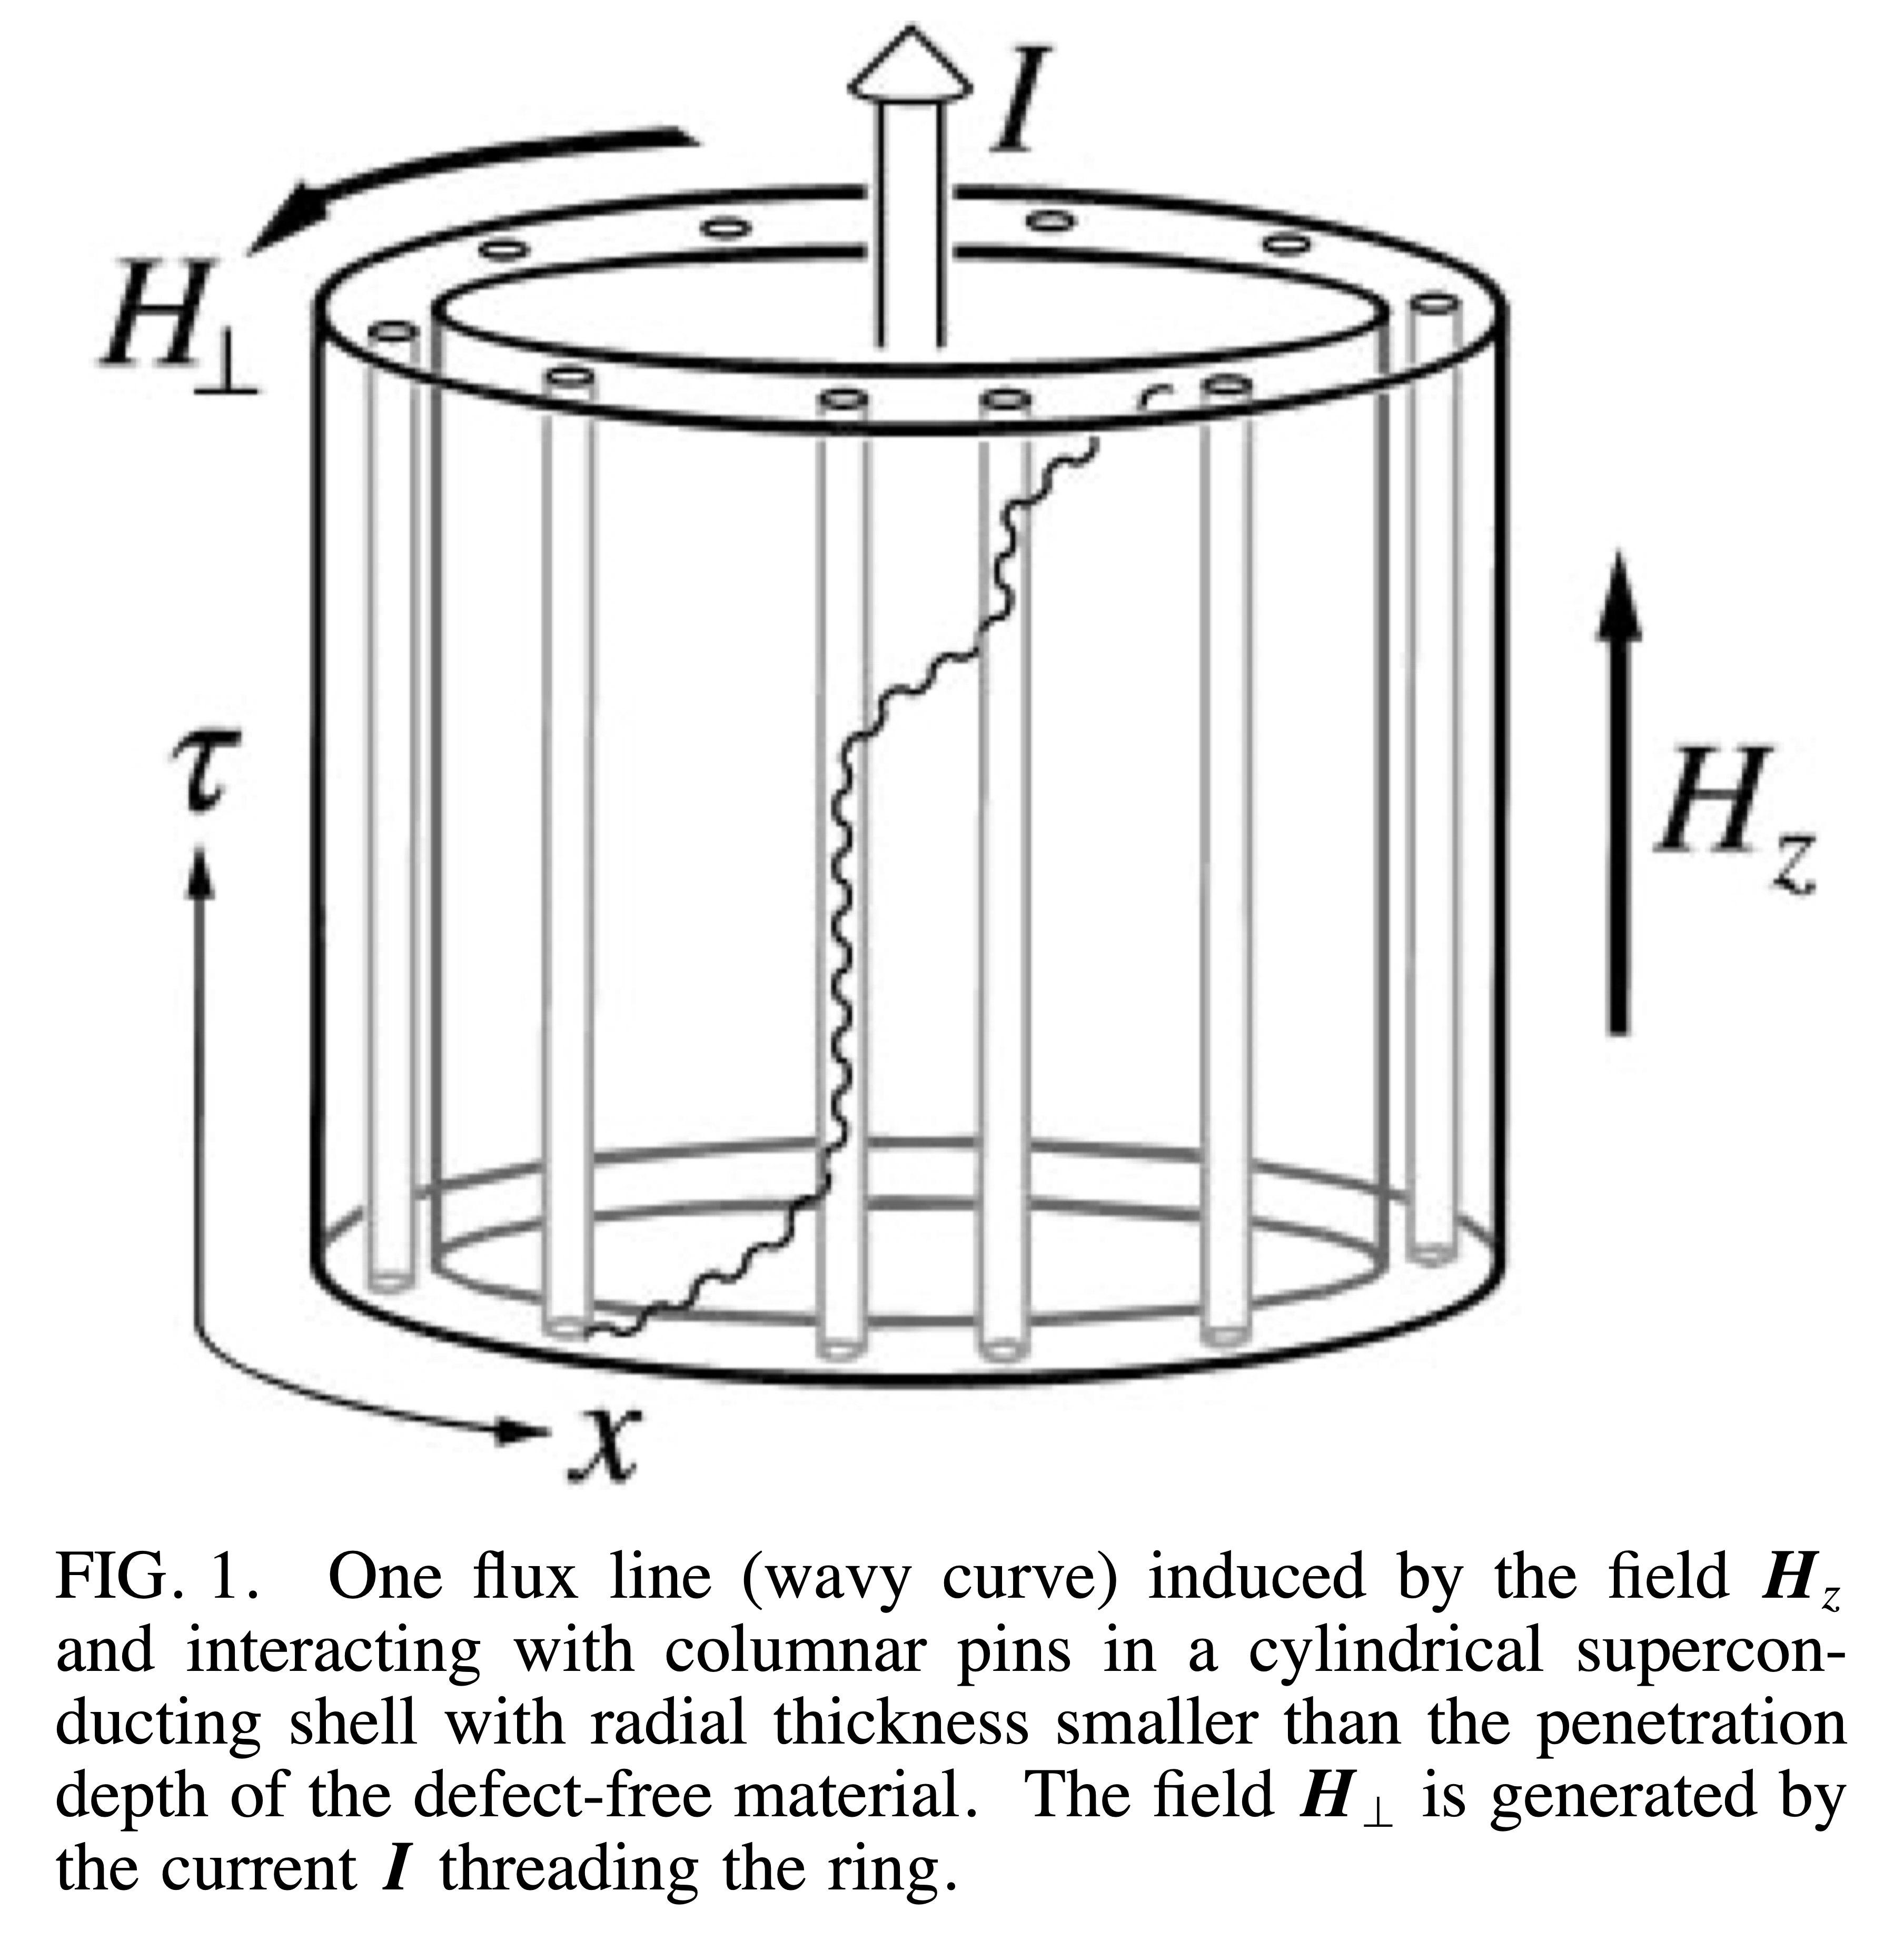 羽田野が1996年に導入した非エルミート量子系のもととなる古典統計力学系。第2種超伝導体に柱状欠陥と磁束線が含まれている。